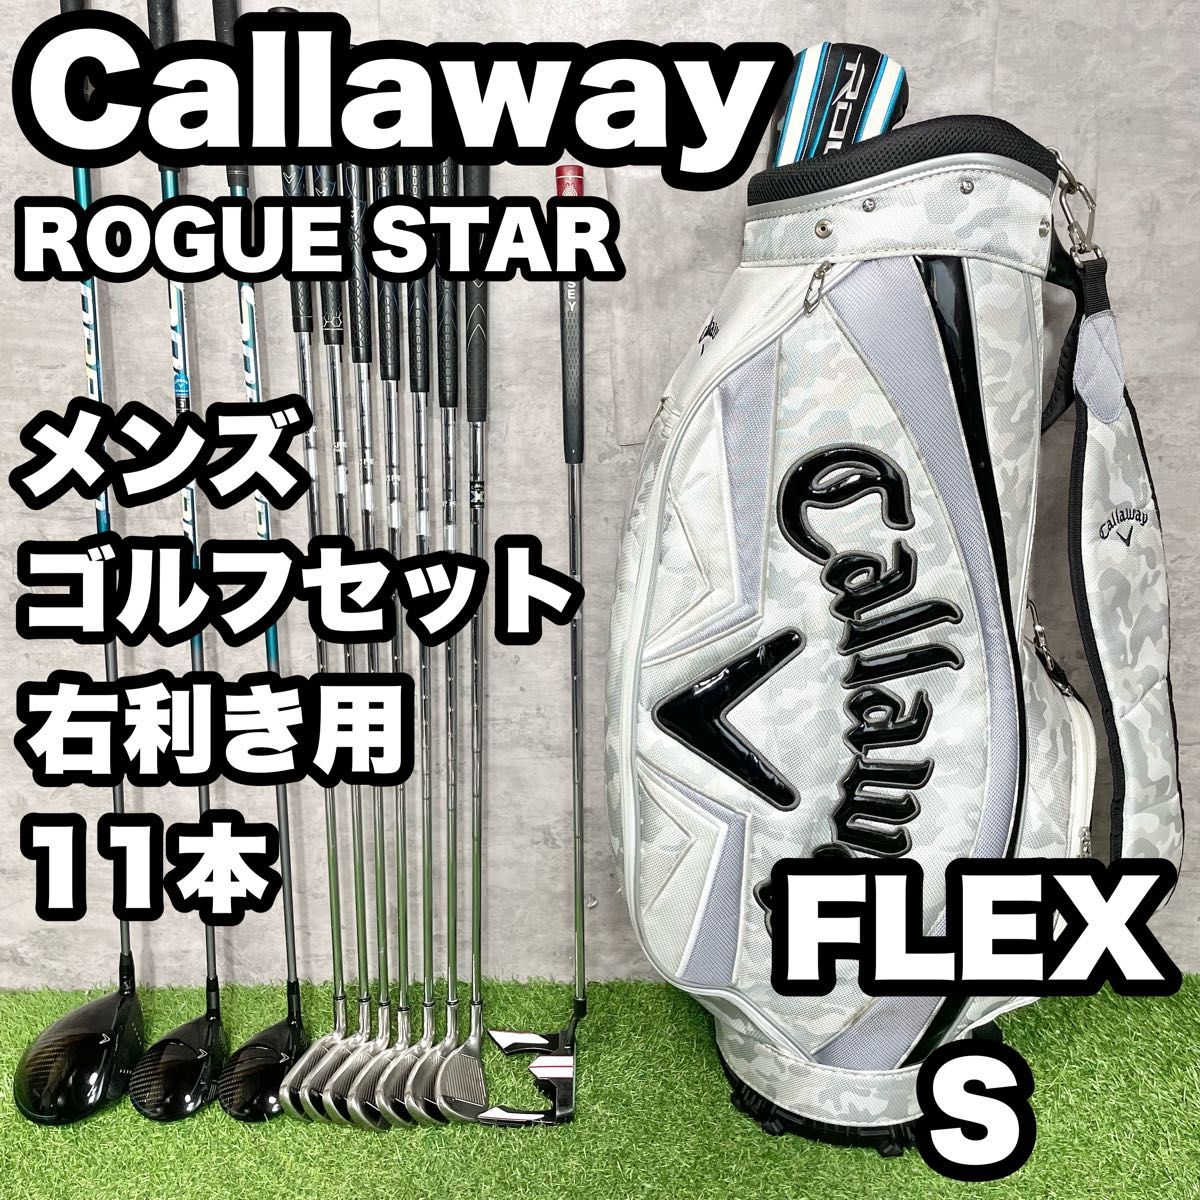 【大人気】Callaway キャロウェイ ROGUE STAR ゴルフクラブセット メンズ S 11本 右